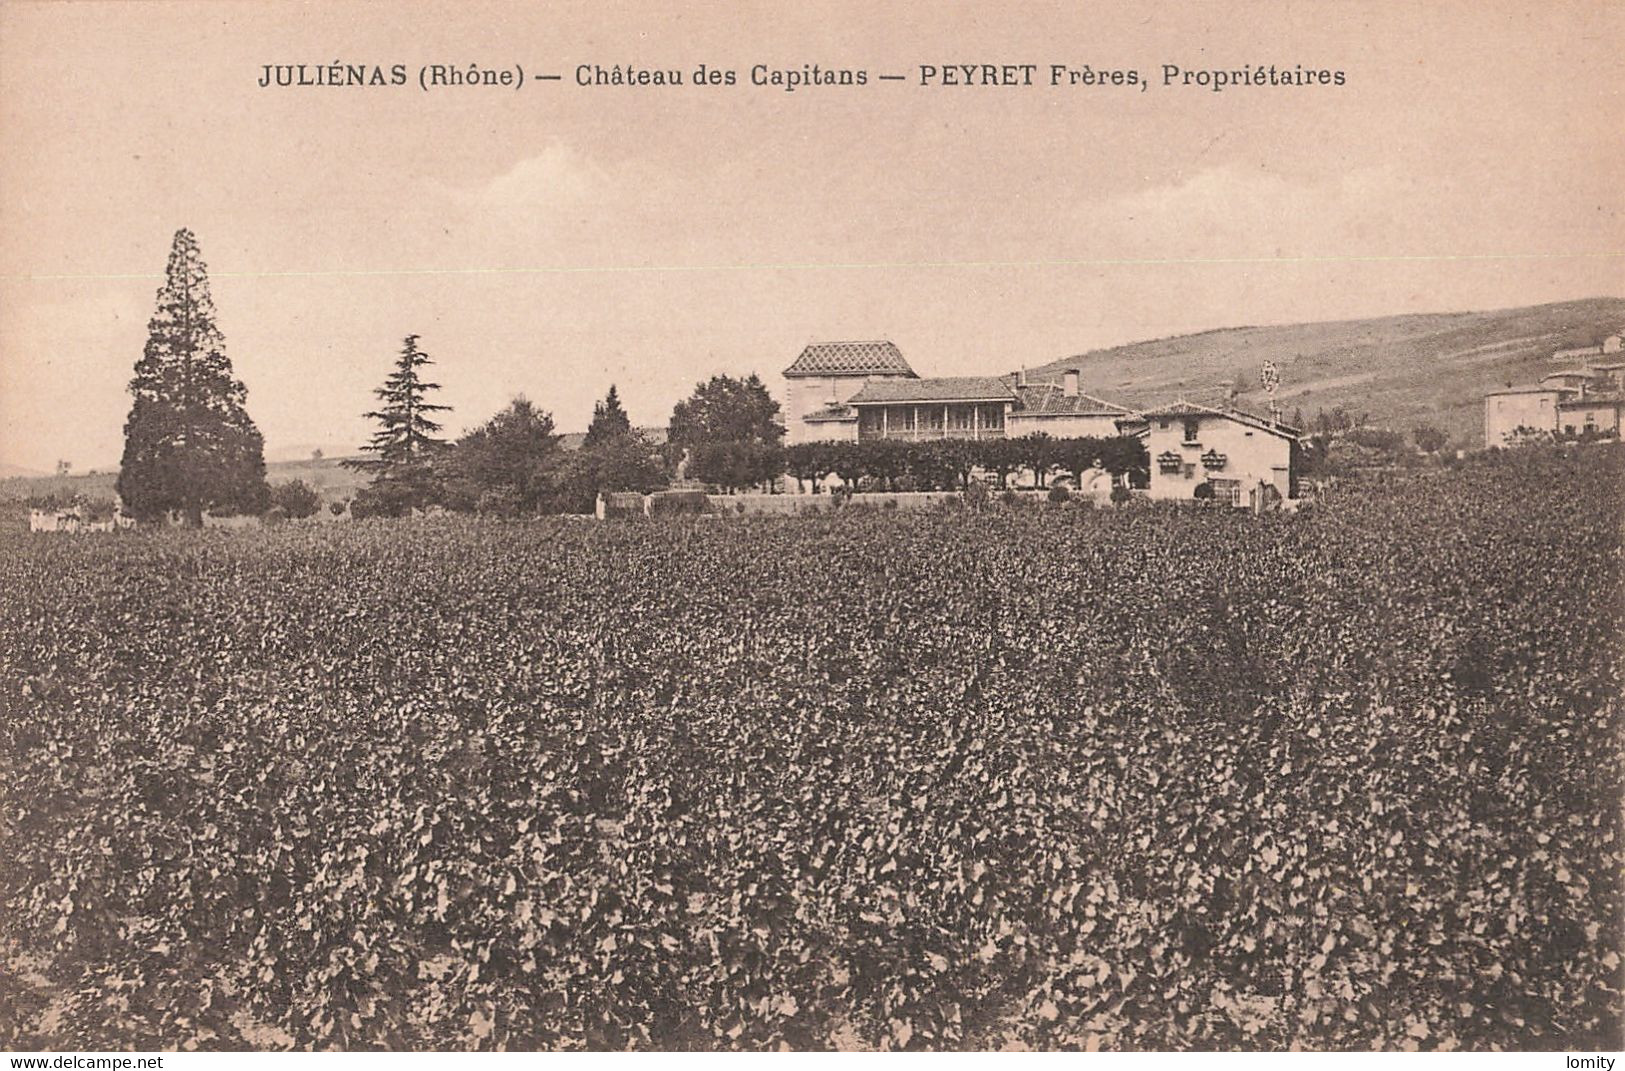 69 Julienas Chateau Des Capitans Peyret Freres Propritéaires CPA Vin Vigne Vignes Vignoble - Julienas